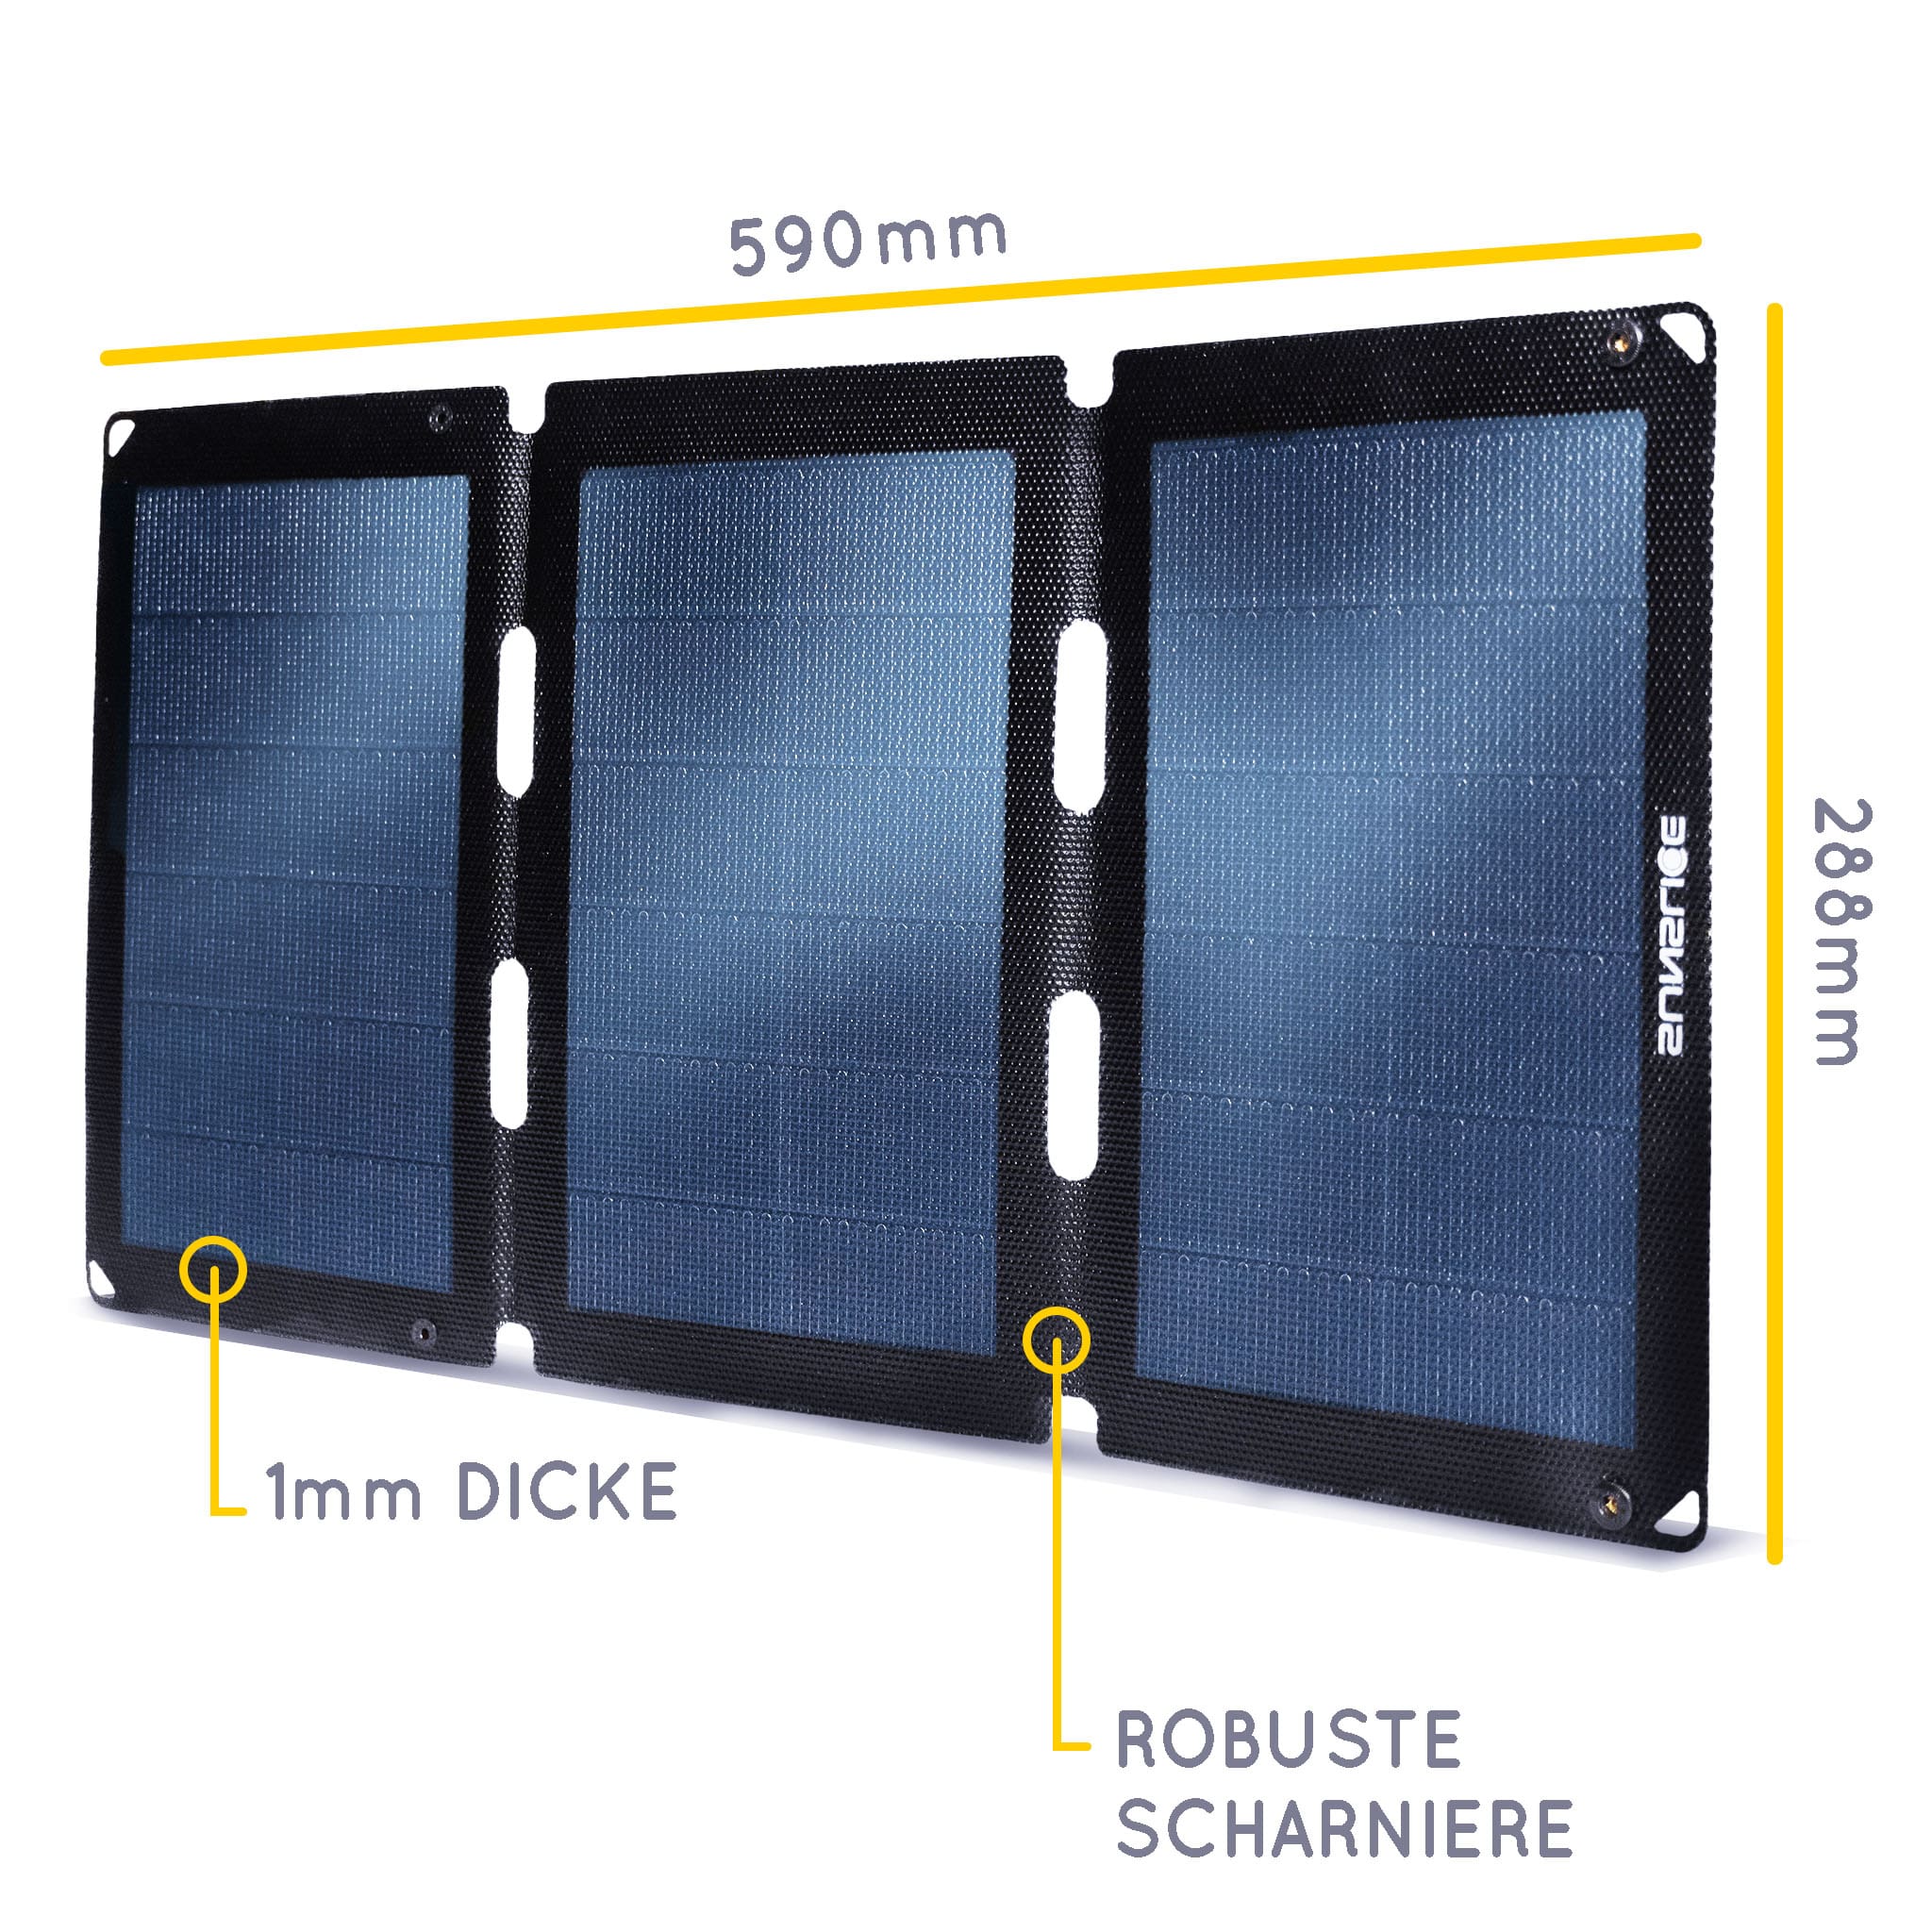 Informationen zum Solarmodul (3 Module) : Größe : 590mm, 288 mm, Dicke 1mm.